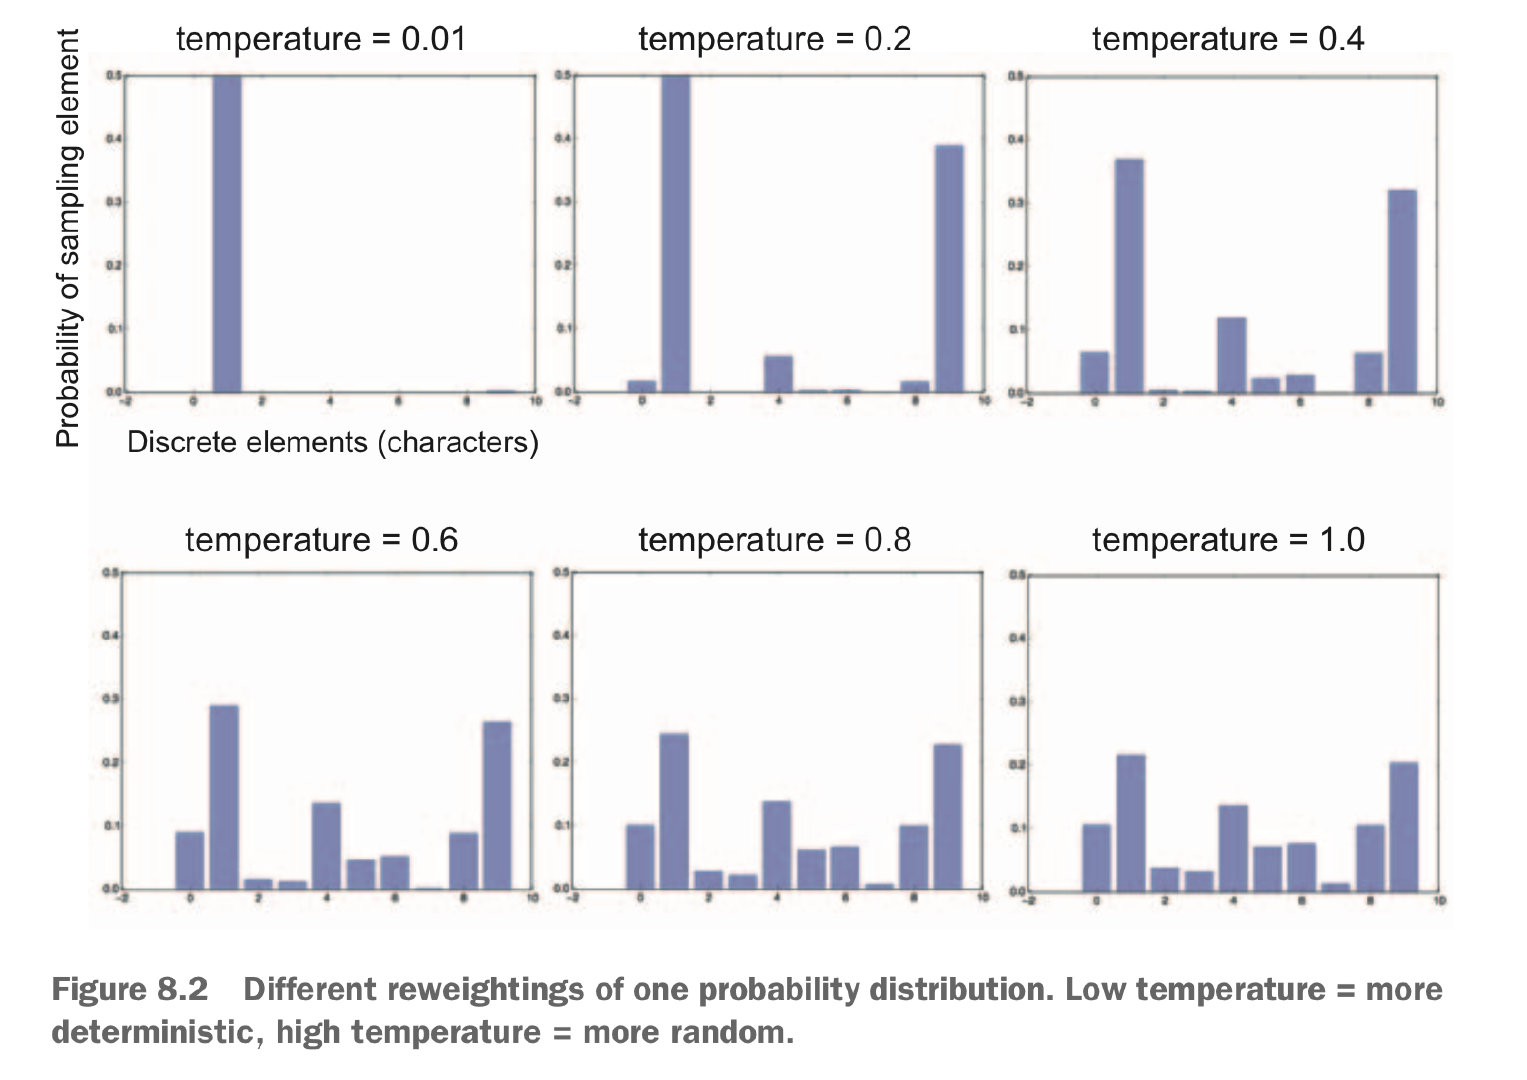 对同一个概率分布进行不同的重新加权：更低的温度=更确定，更高的温度=更随机